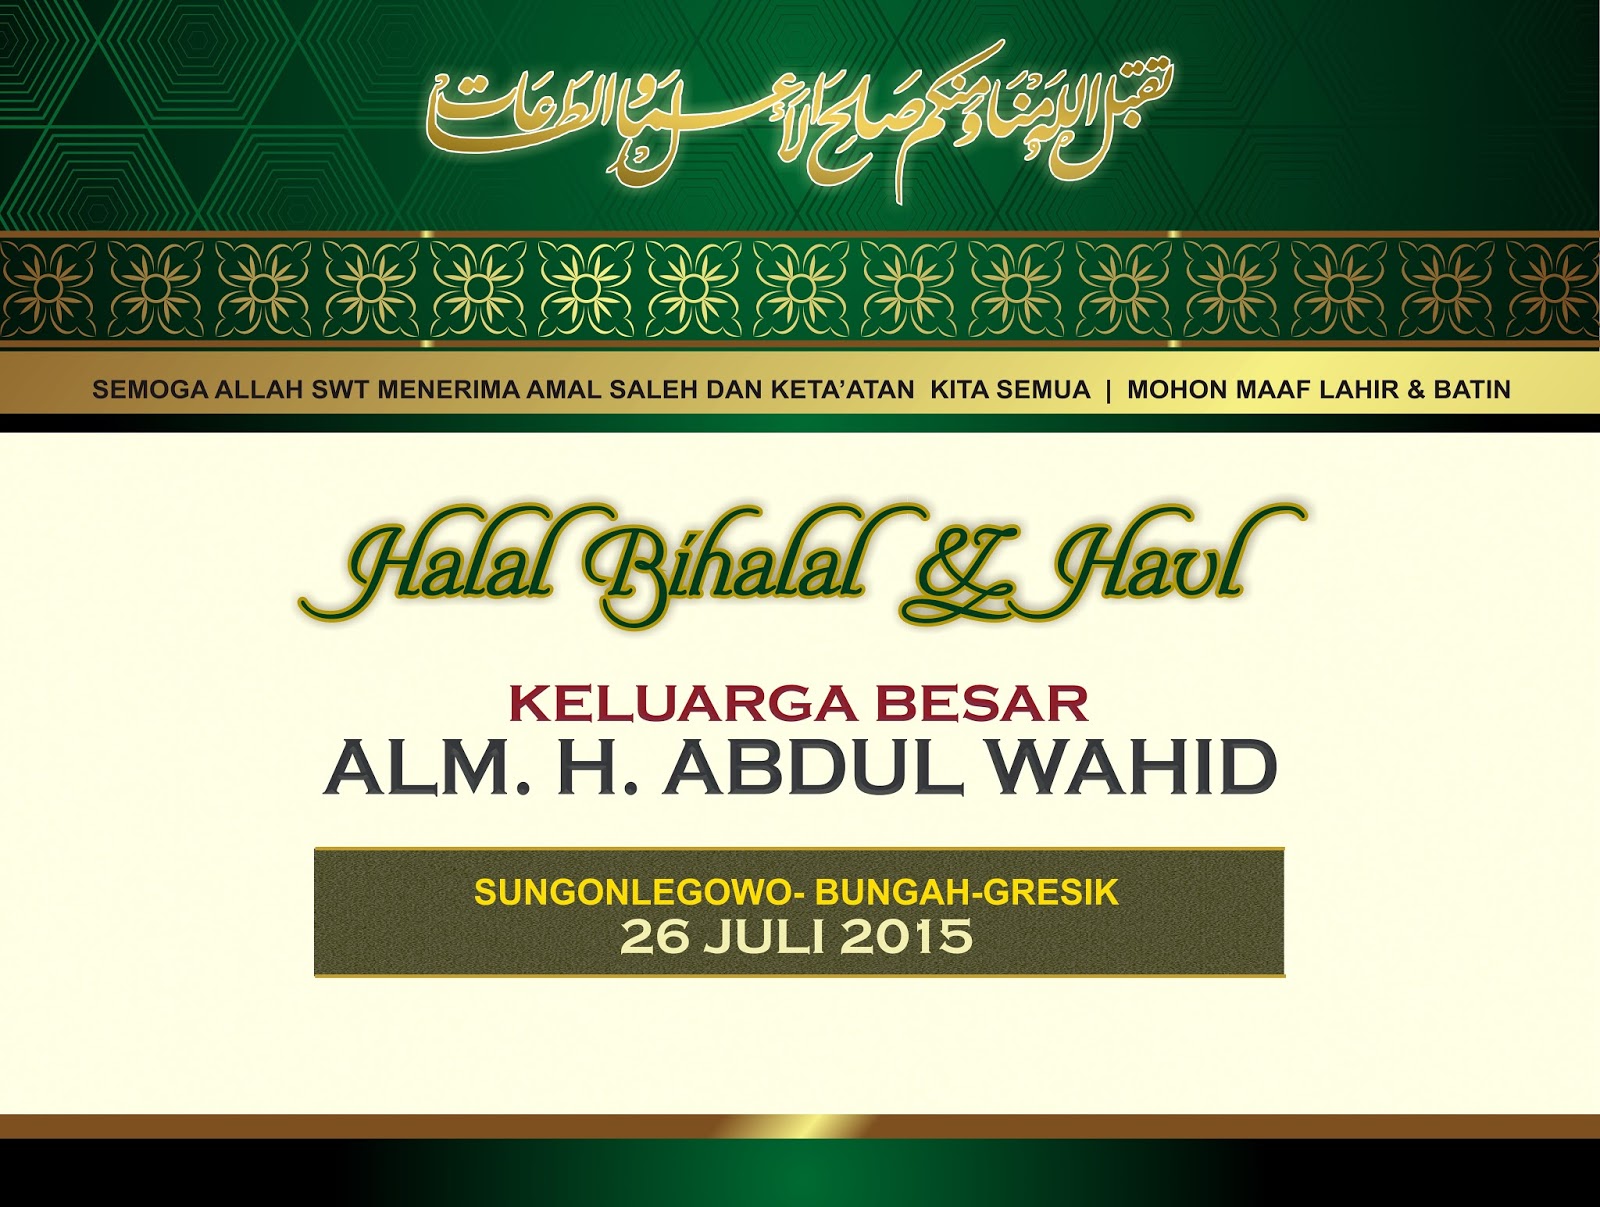 5 Contoh Banner Halal Bihalal yang Menarik - Contoh Banner